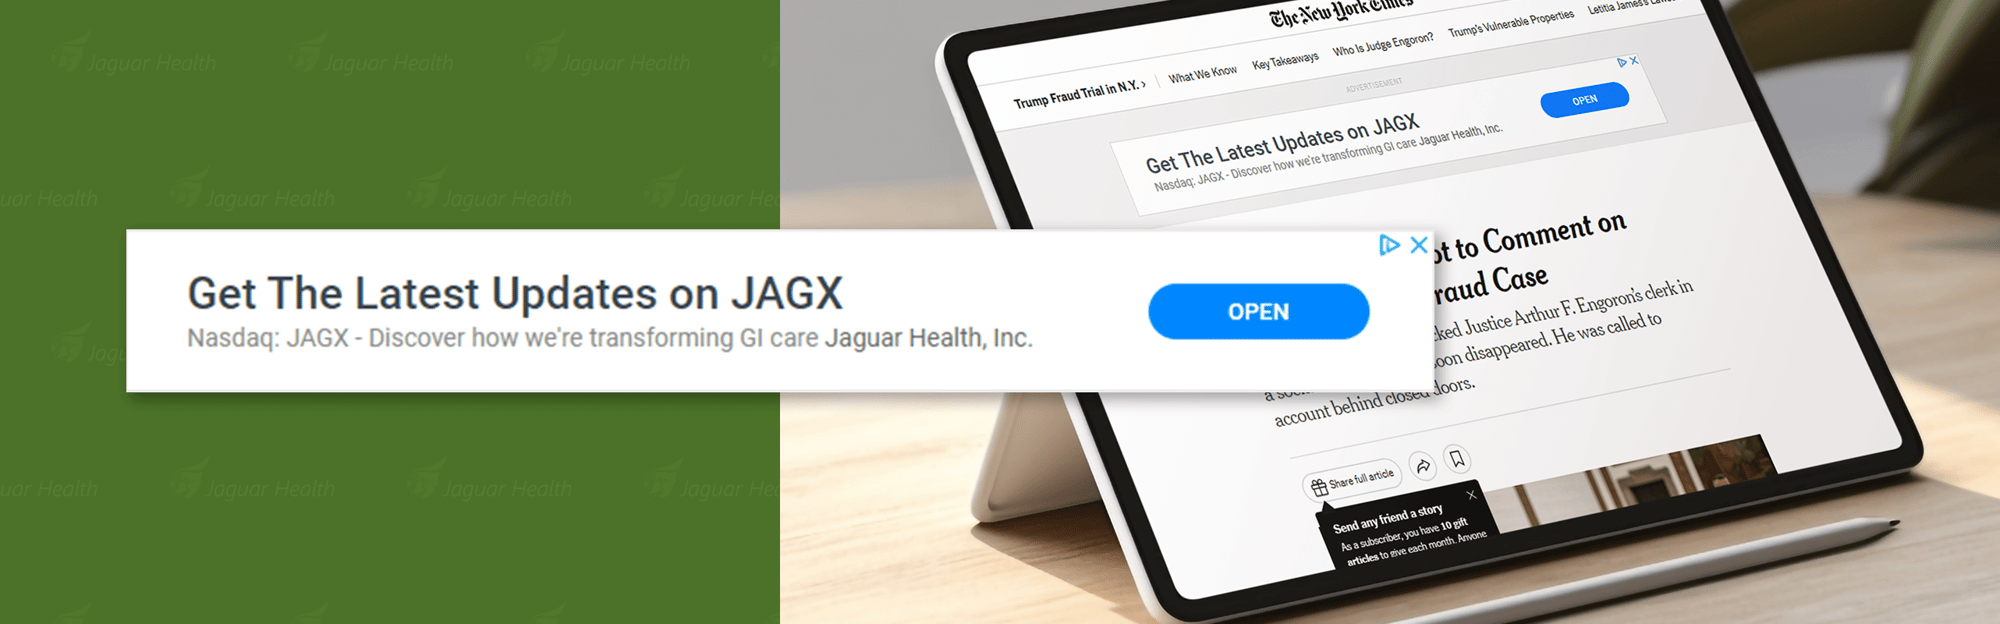 Jaguar-Mockup-Desktop-Google-Display-3